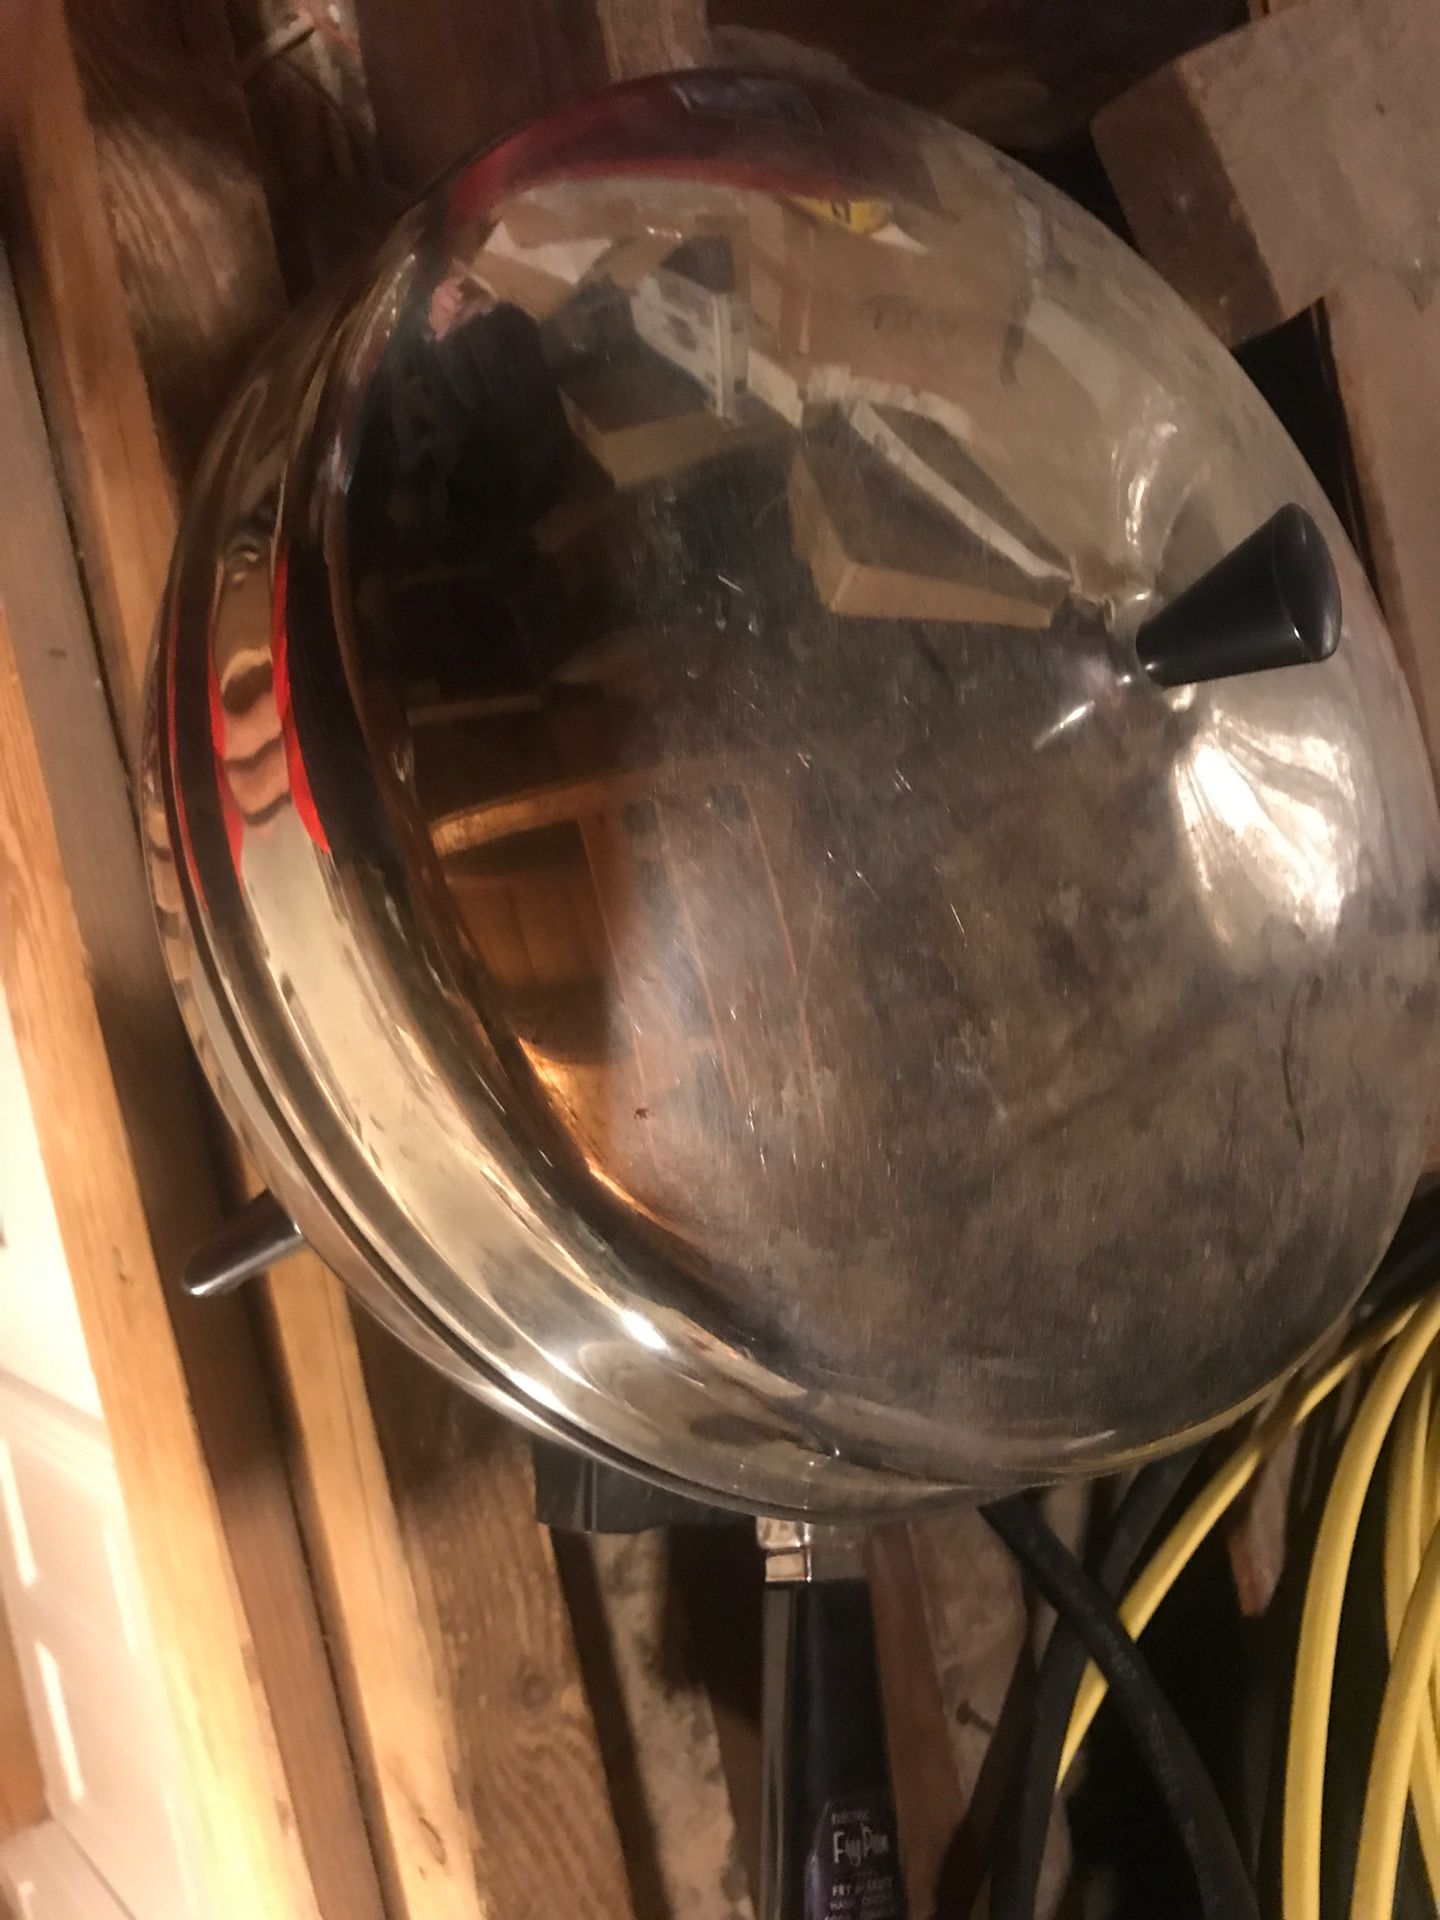 Stainless Steel Farberware Electric Fry Pan